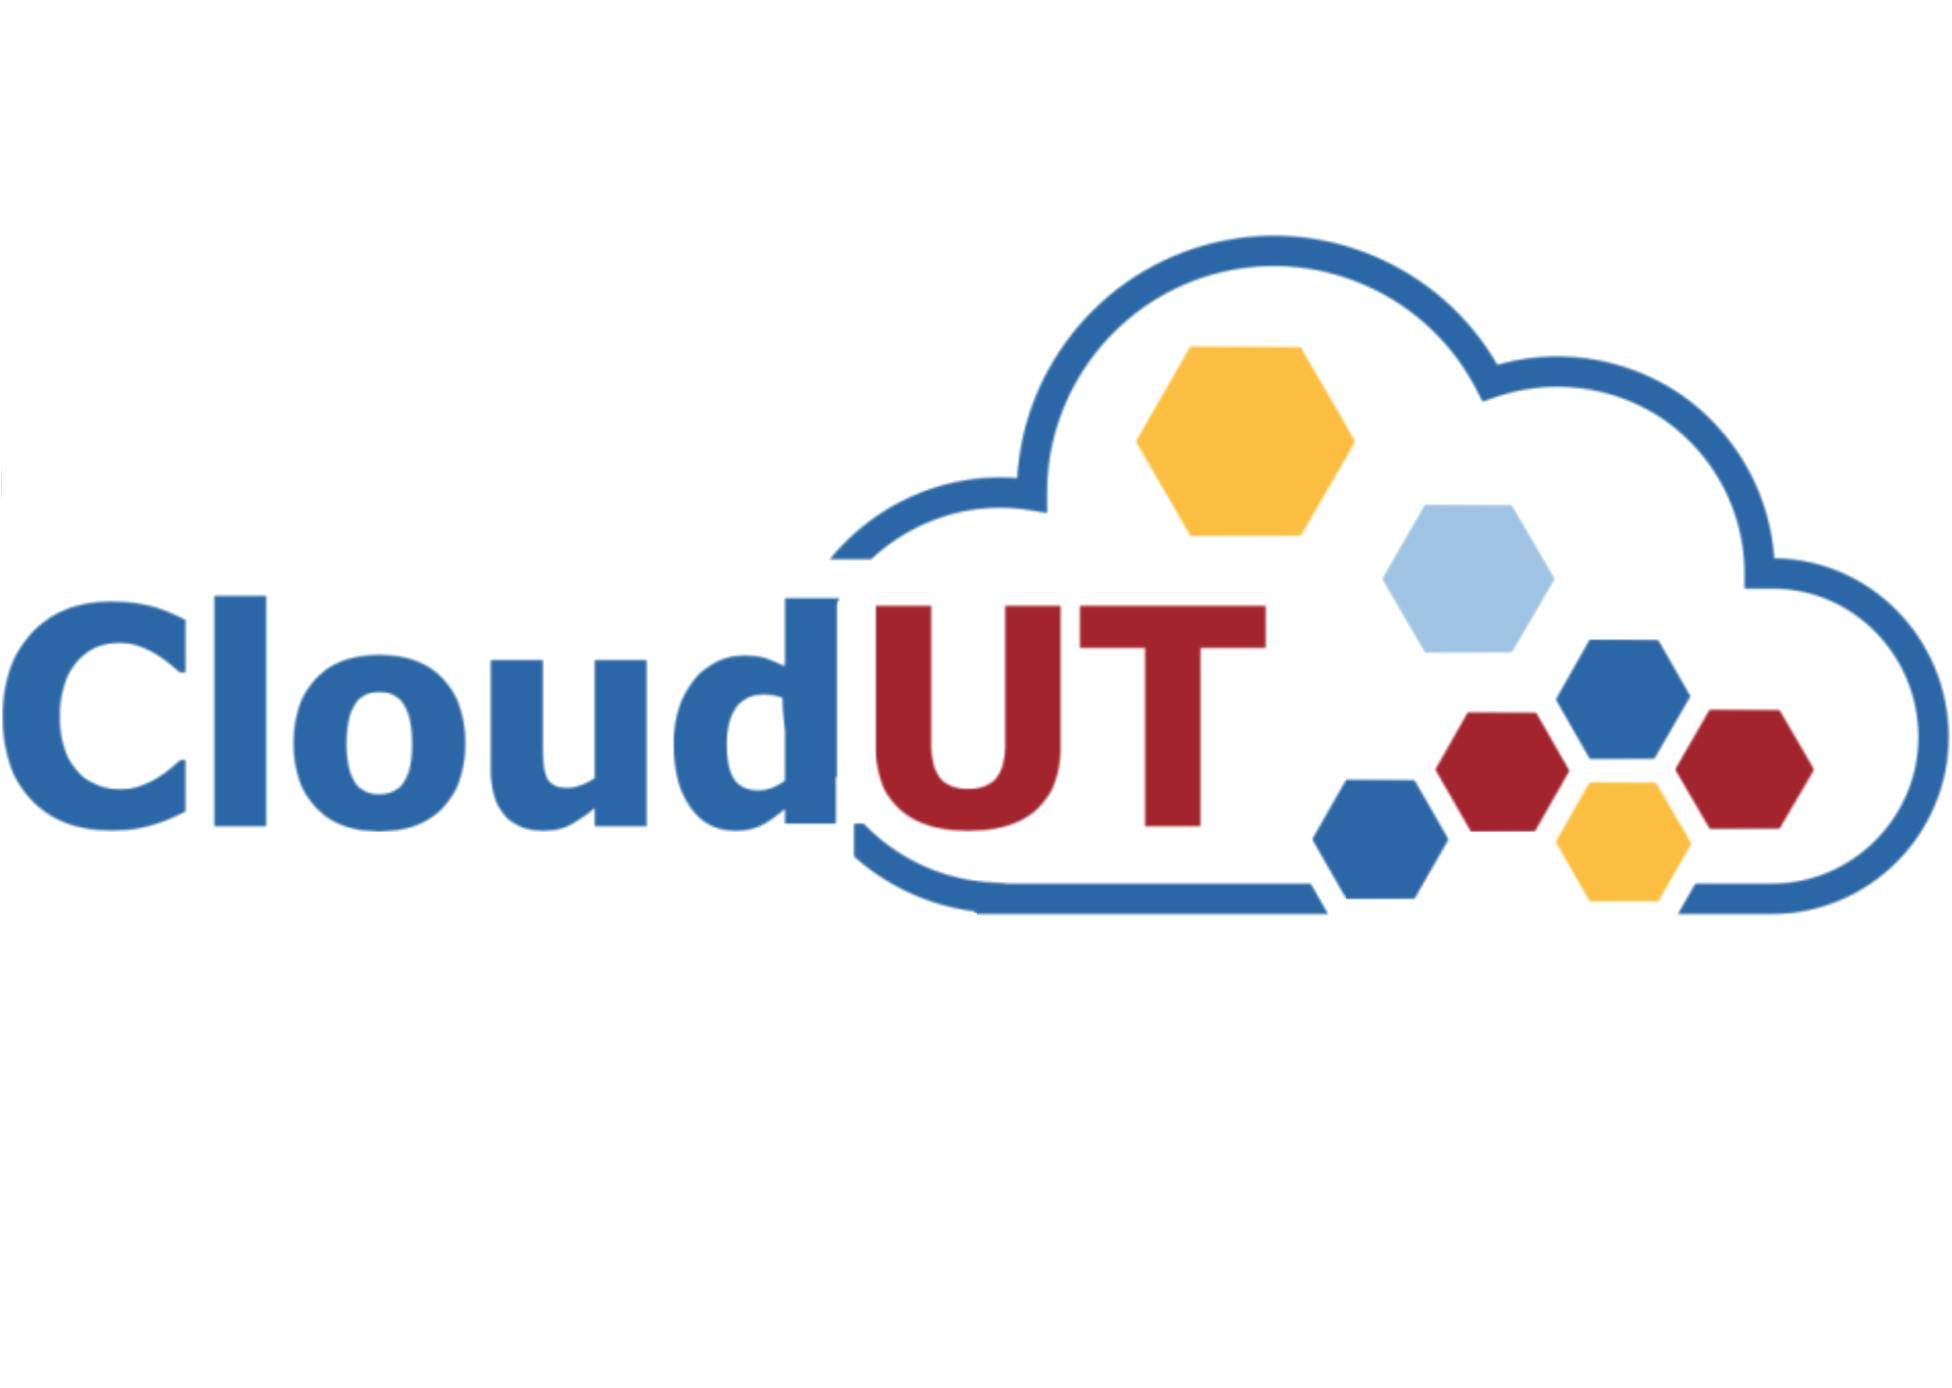 cloud cercetare utcn-cloudut